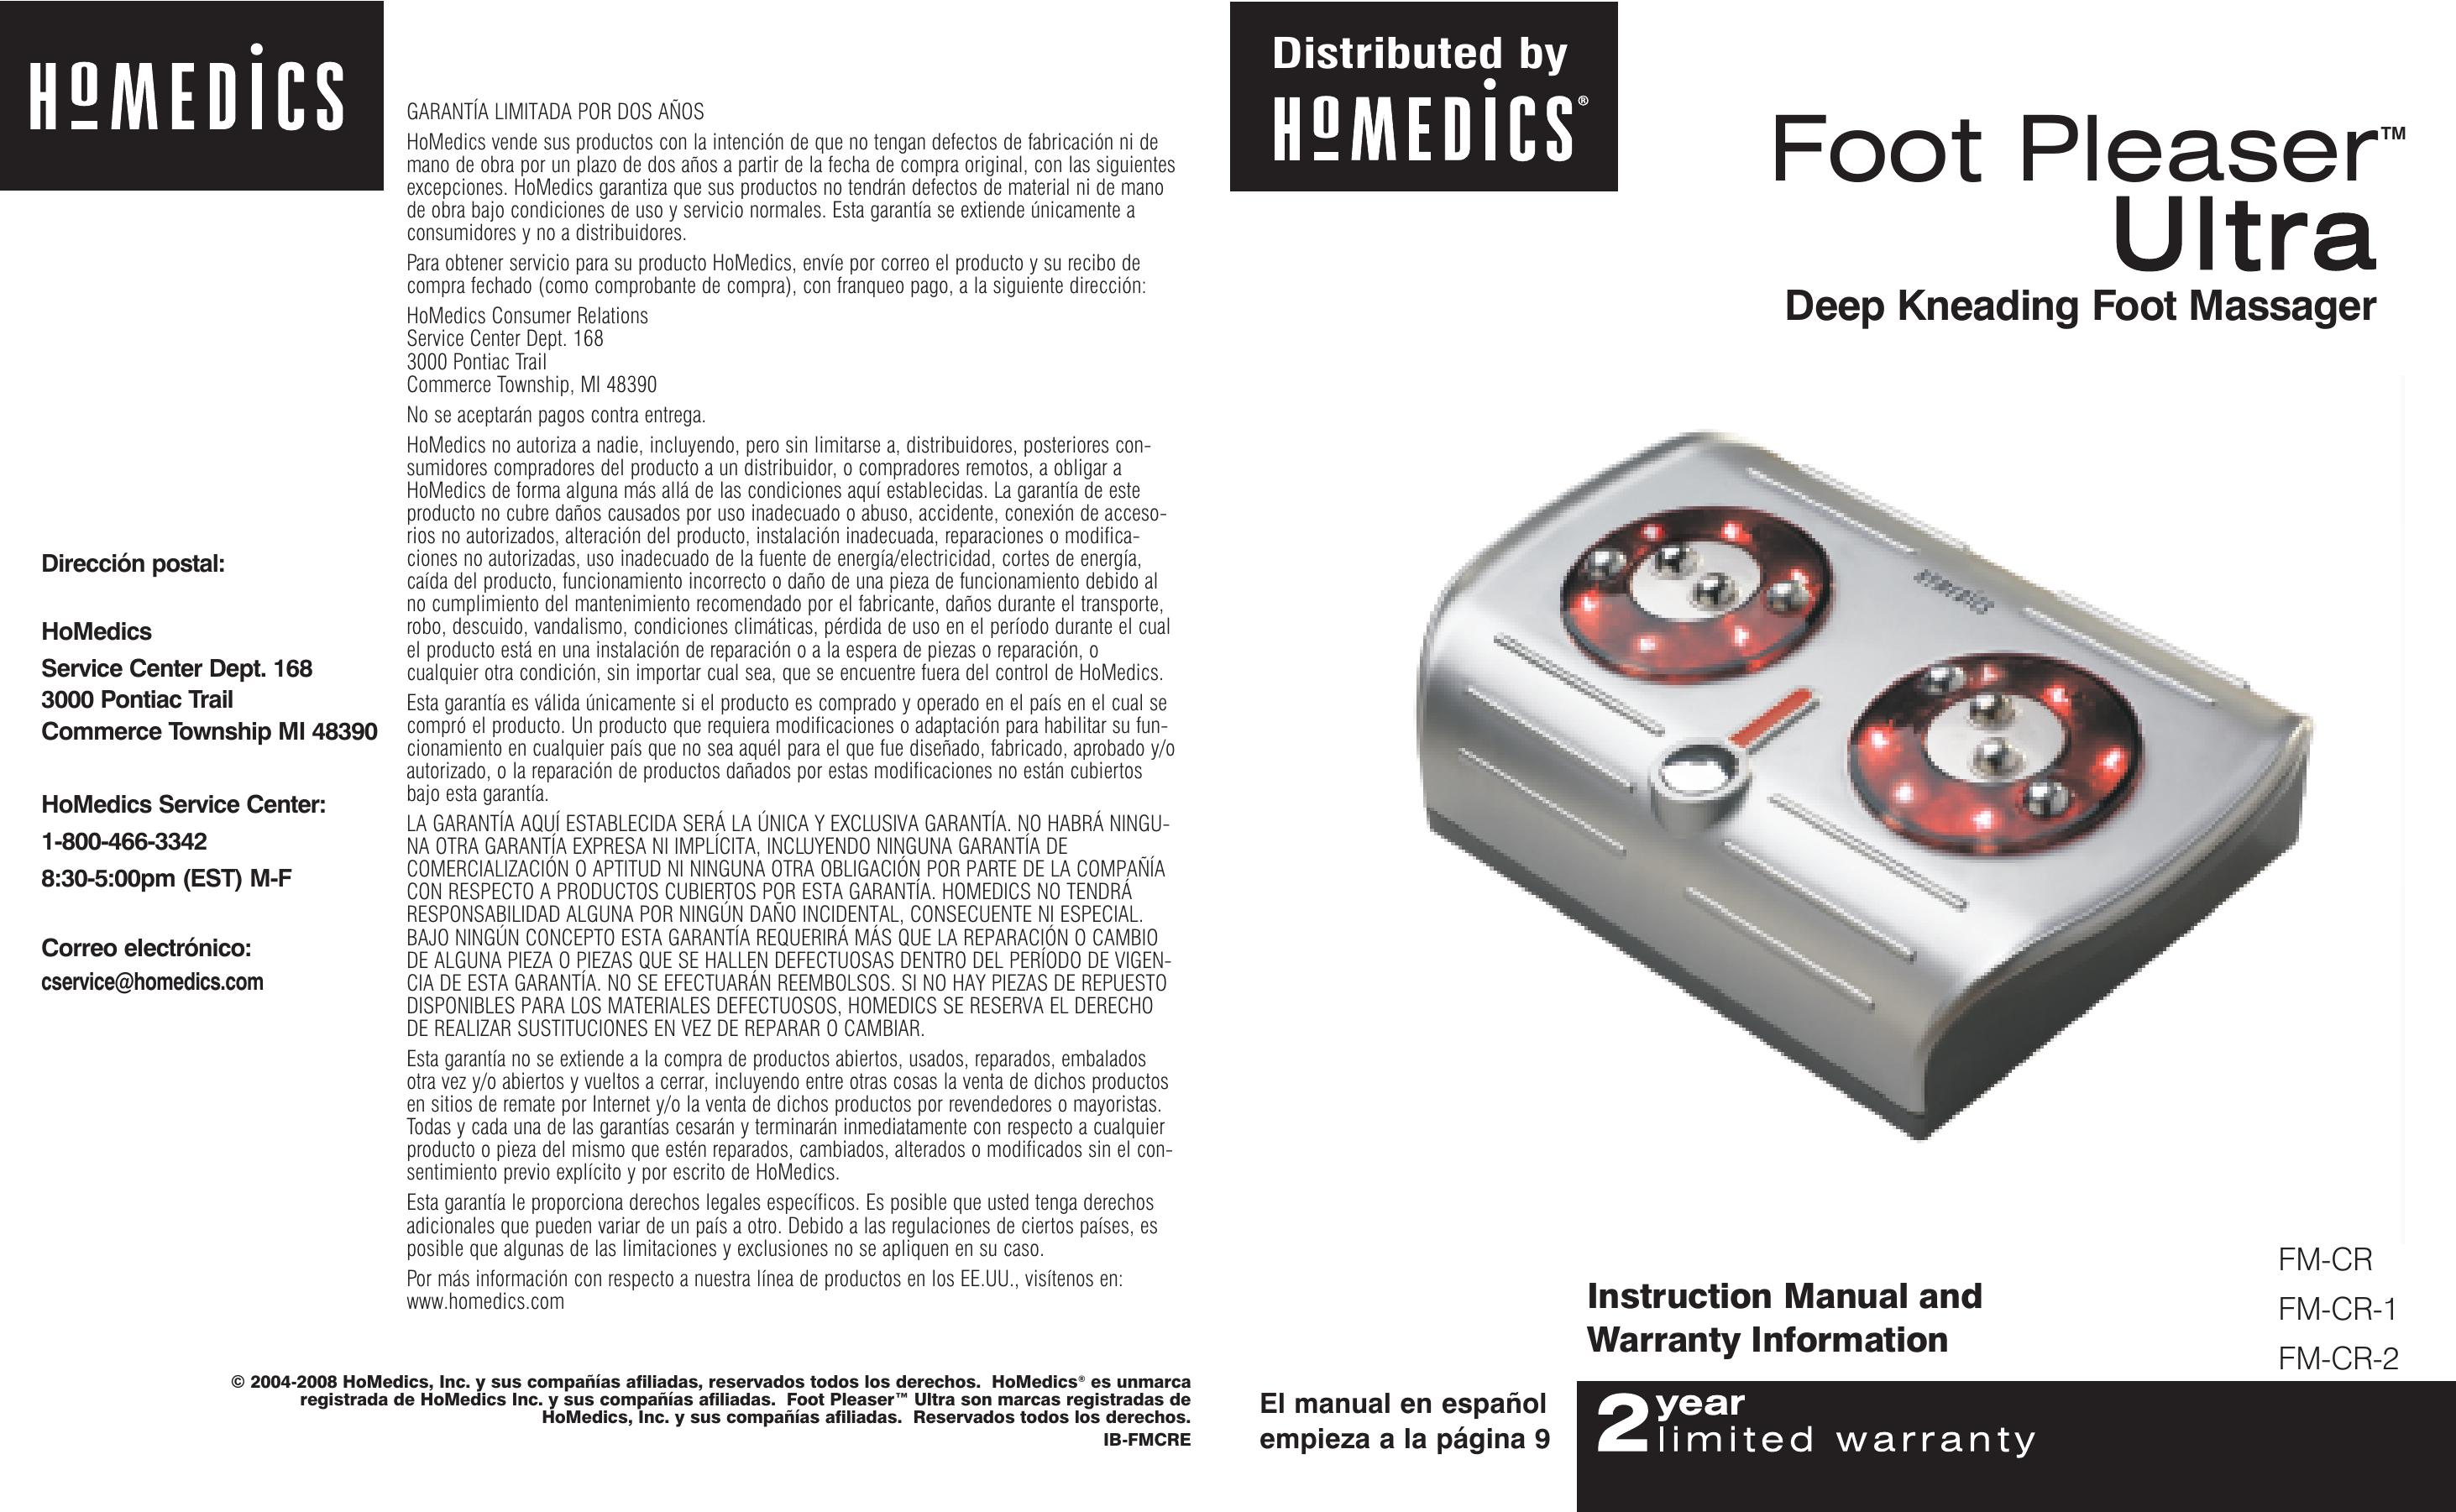 HoMedics FM-CR-1 Pedicure Spa User Manual